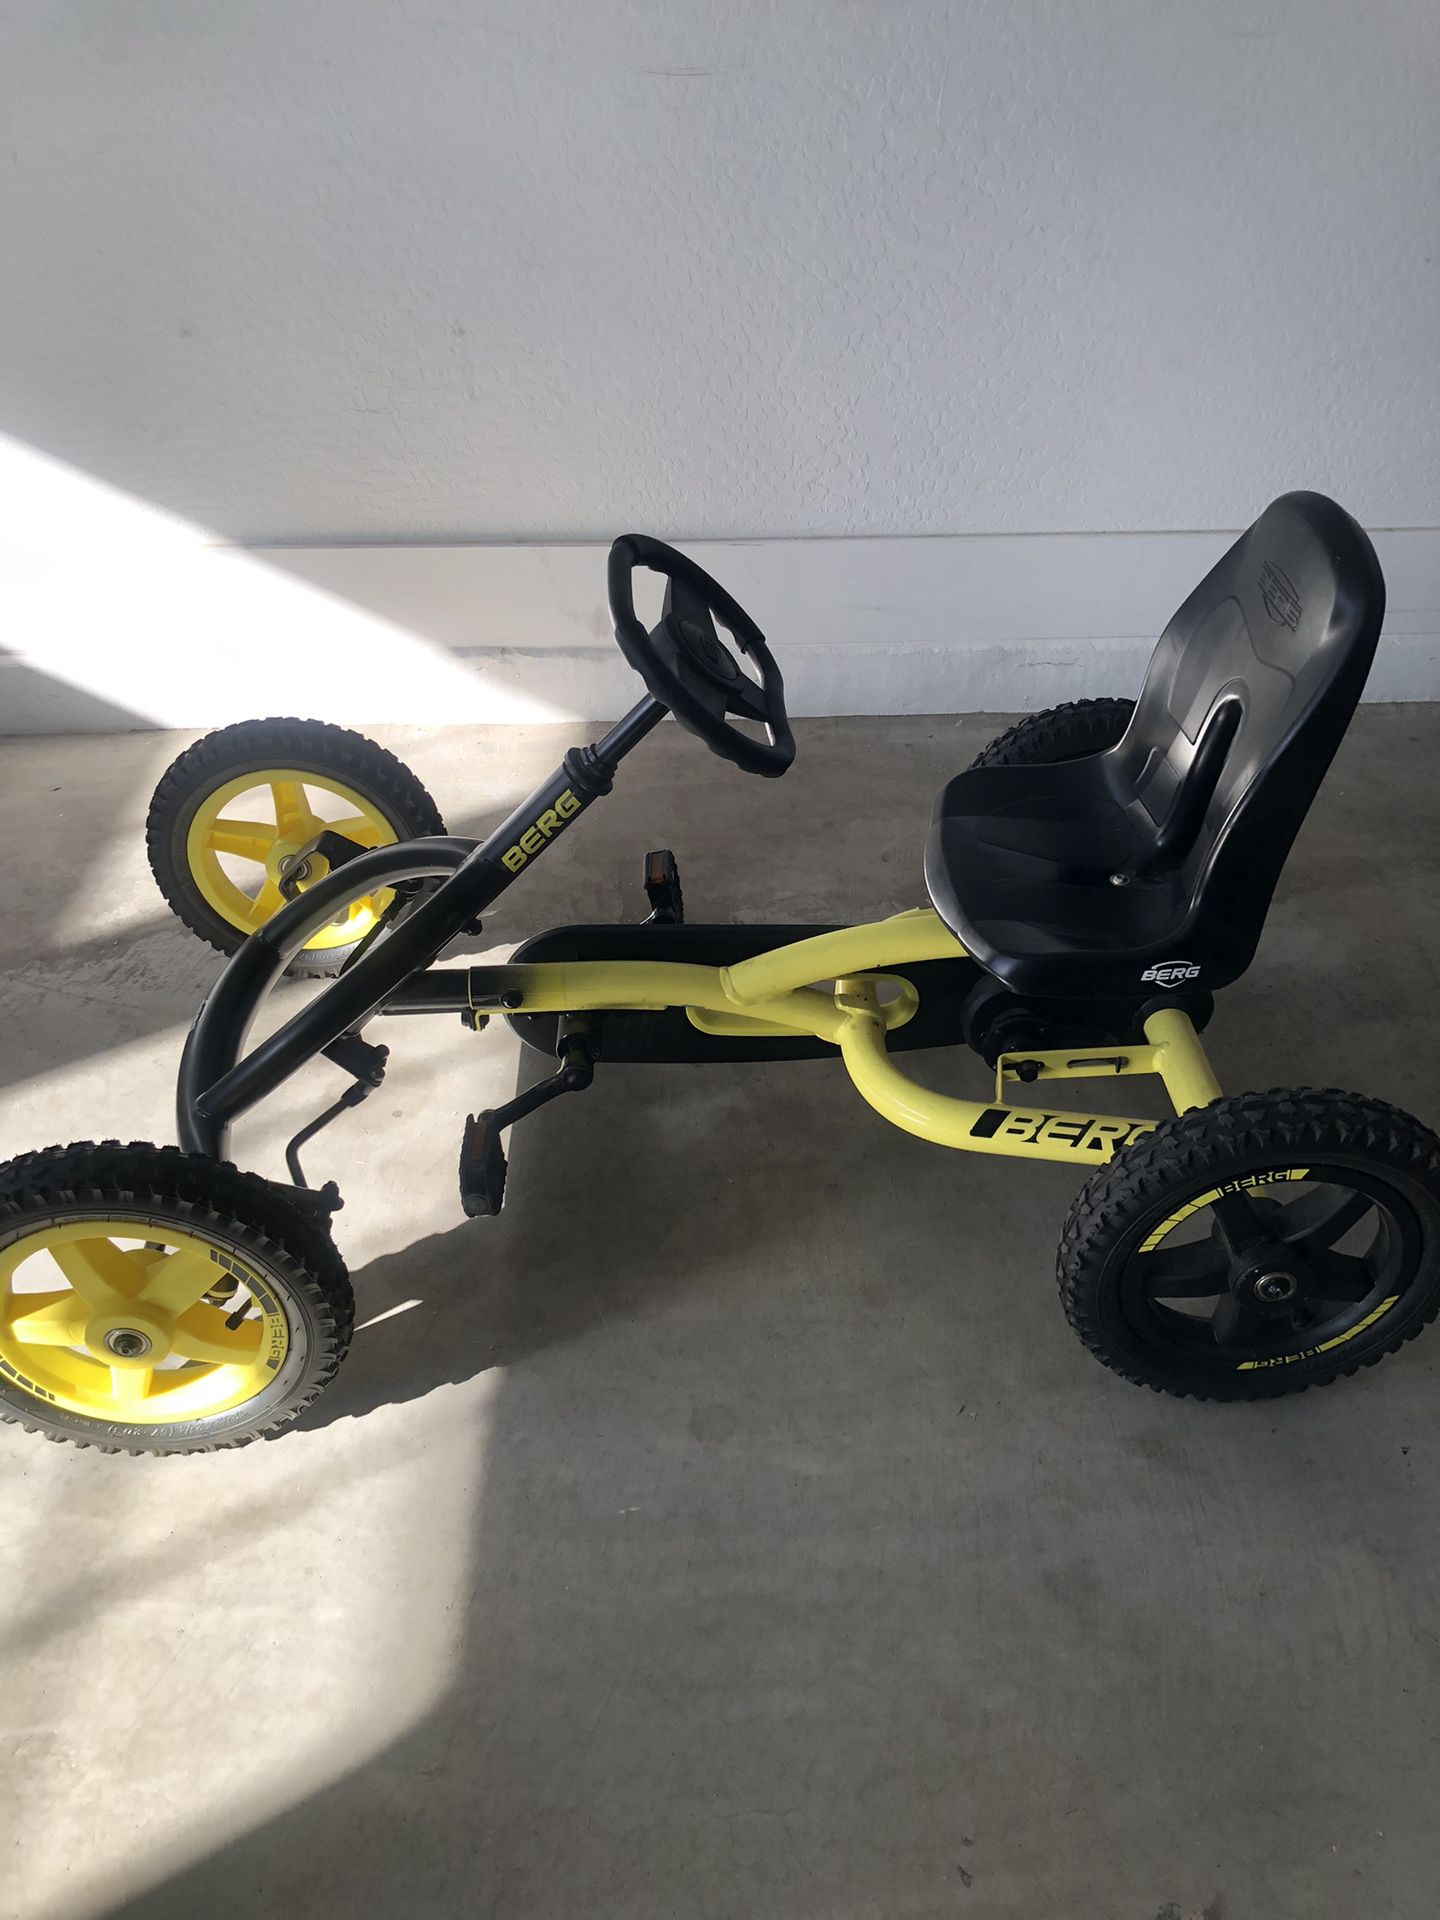 BERG Pedal Go-Kart Buddy Cross 